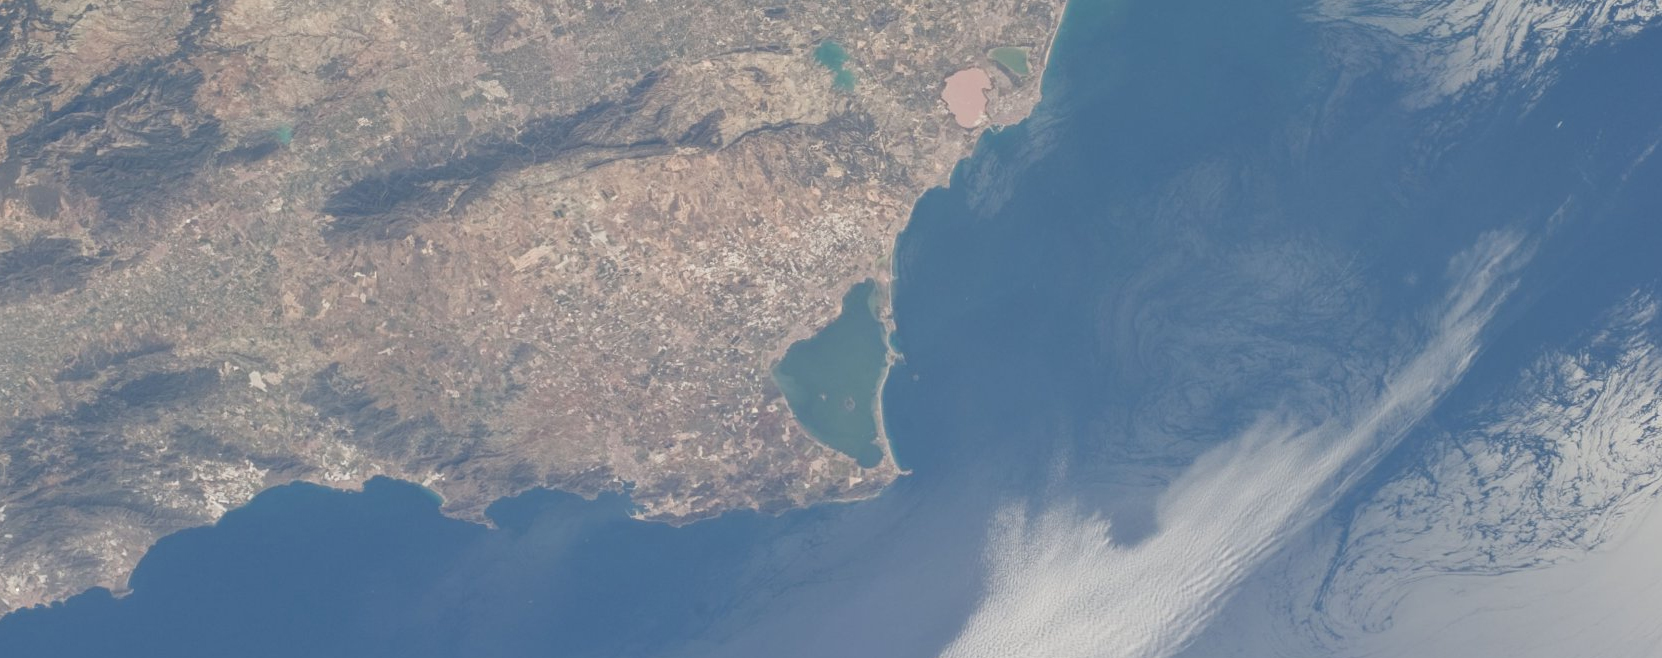 El Mar Menor, visto desde el espacio